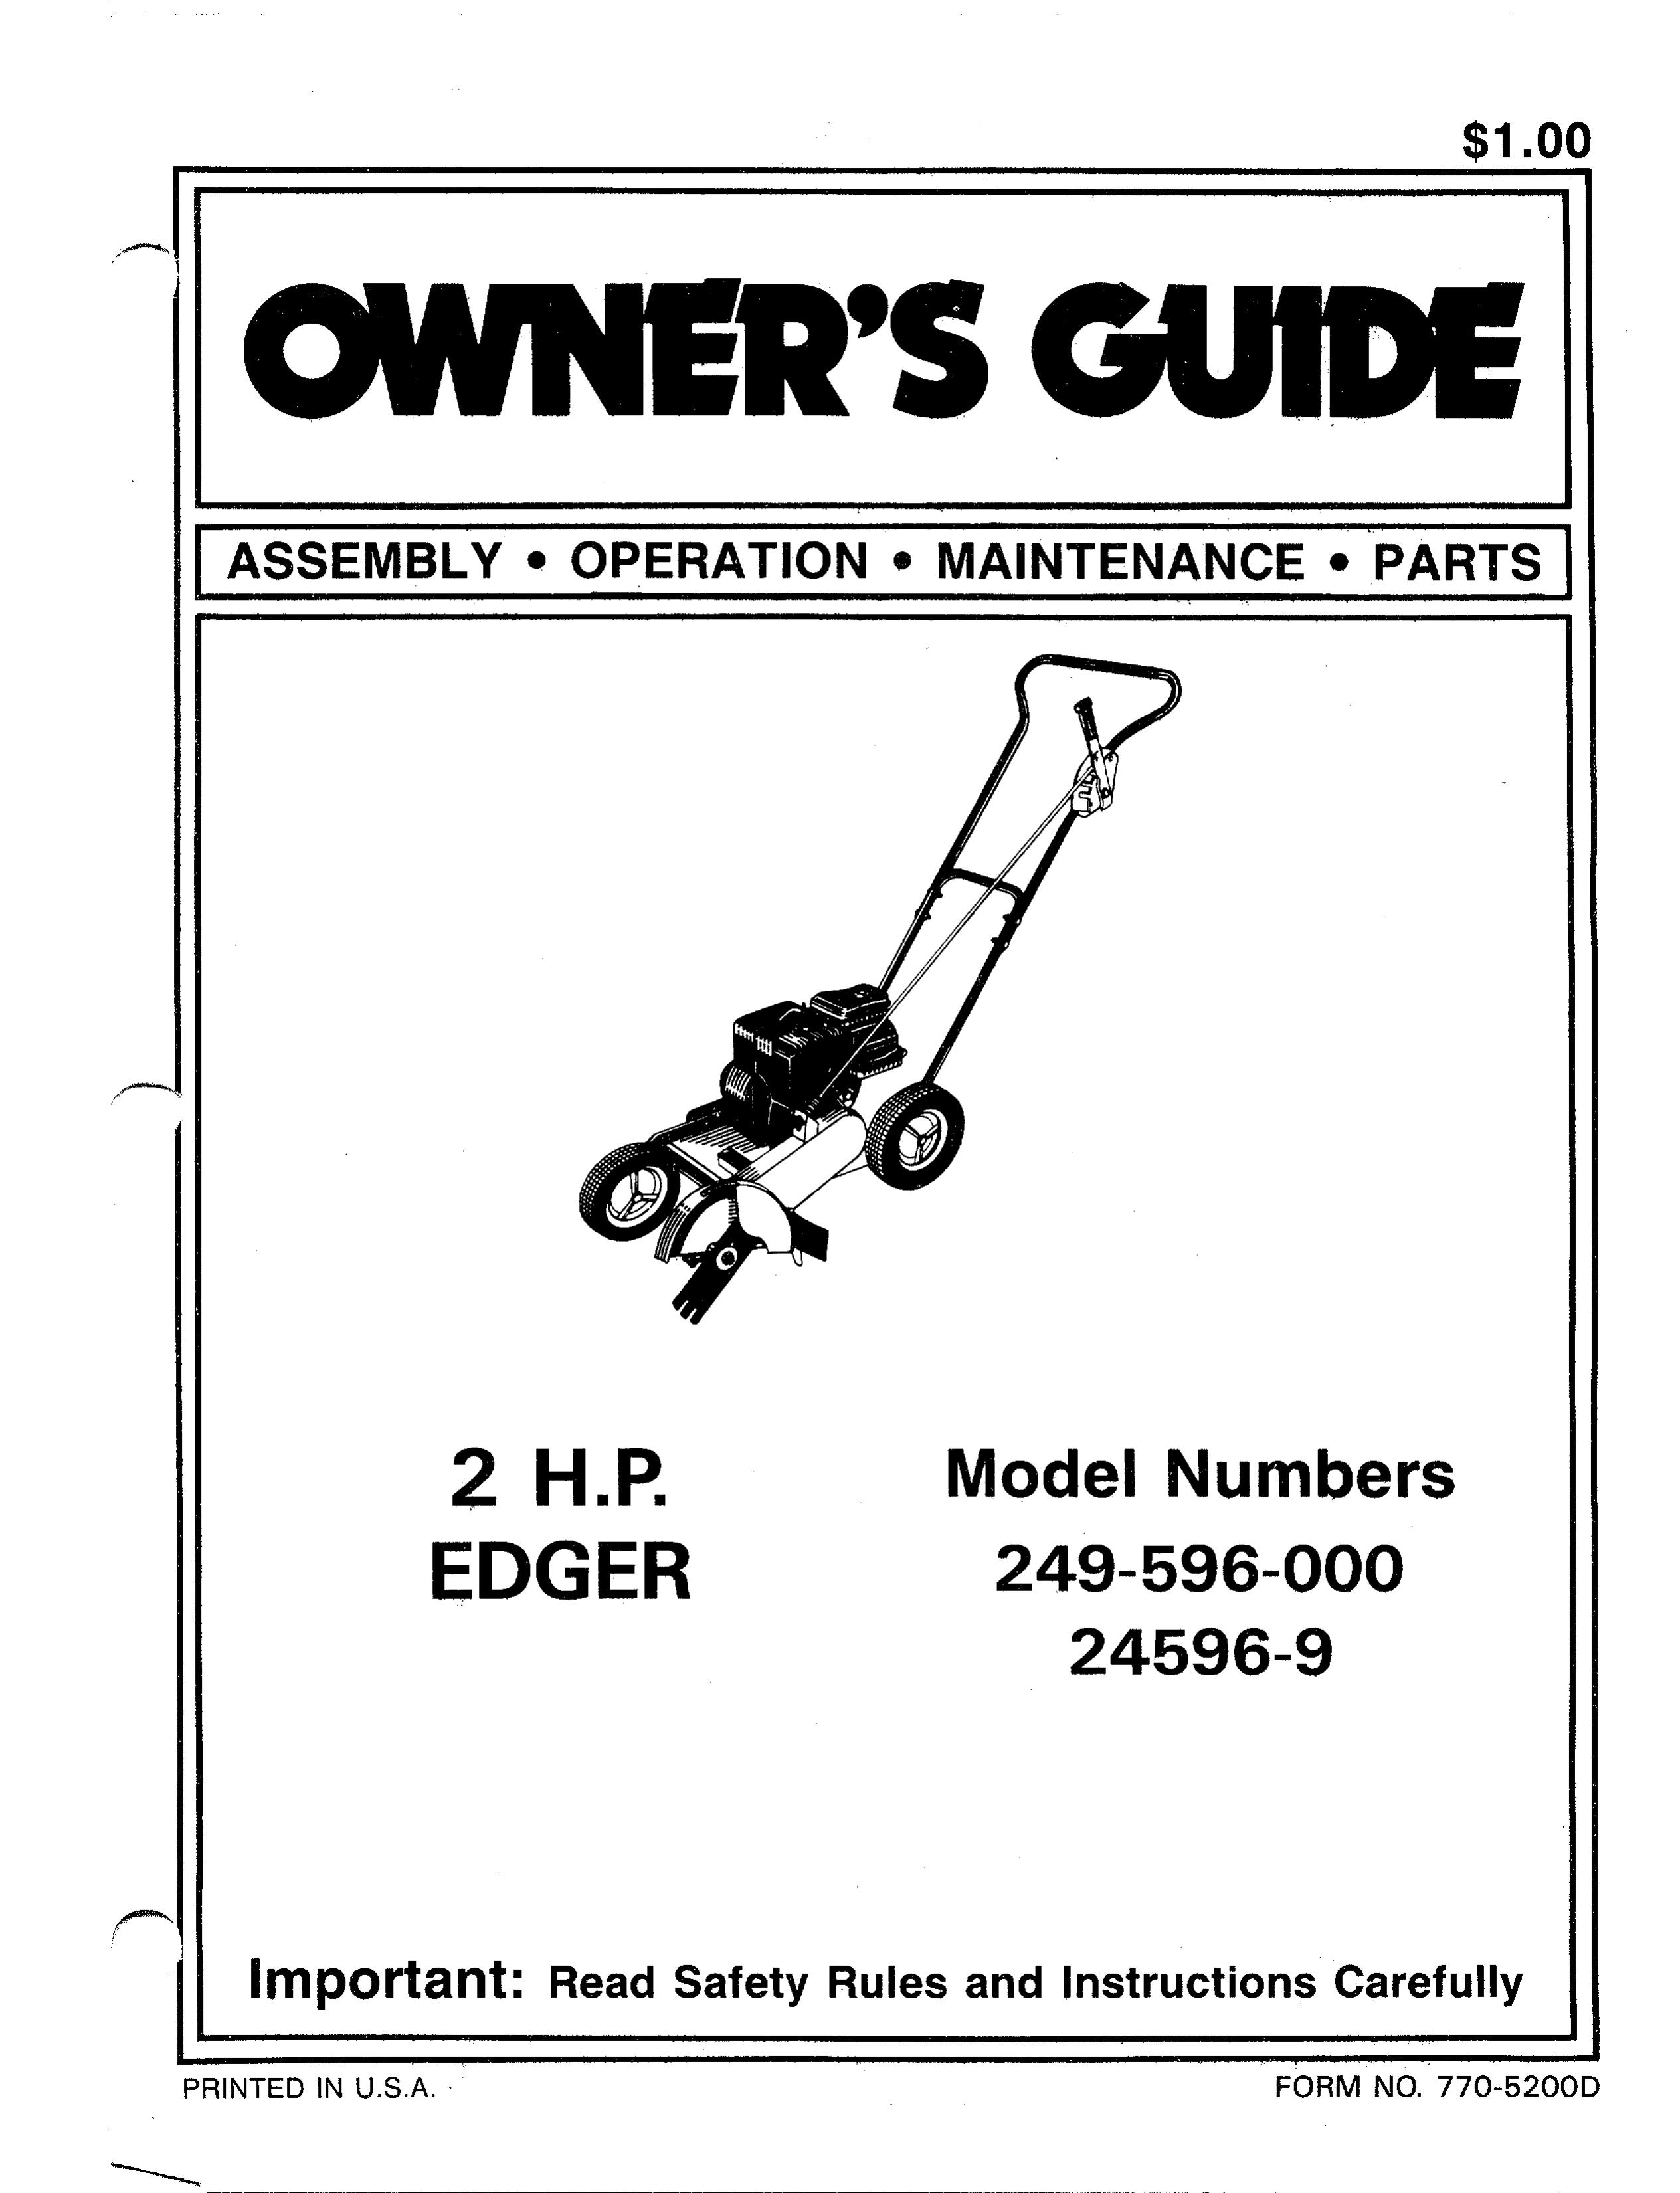 Bolens 24596-9 Trimmer User Manual